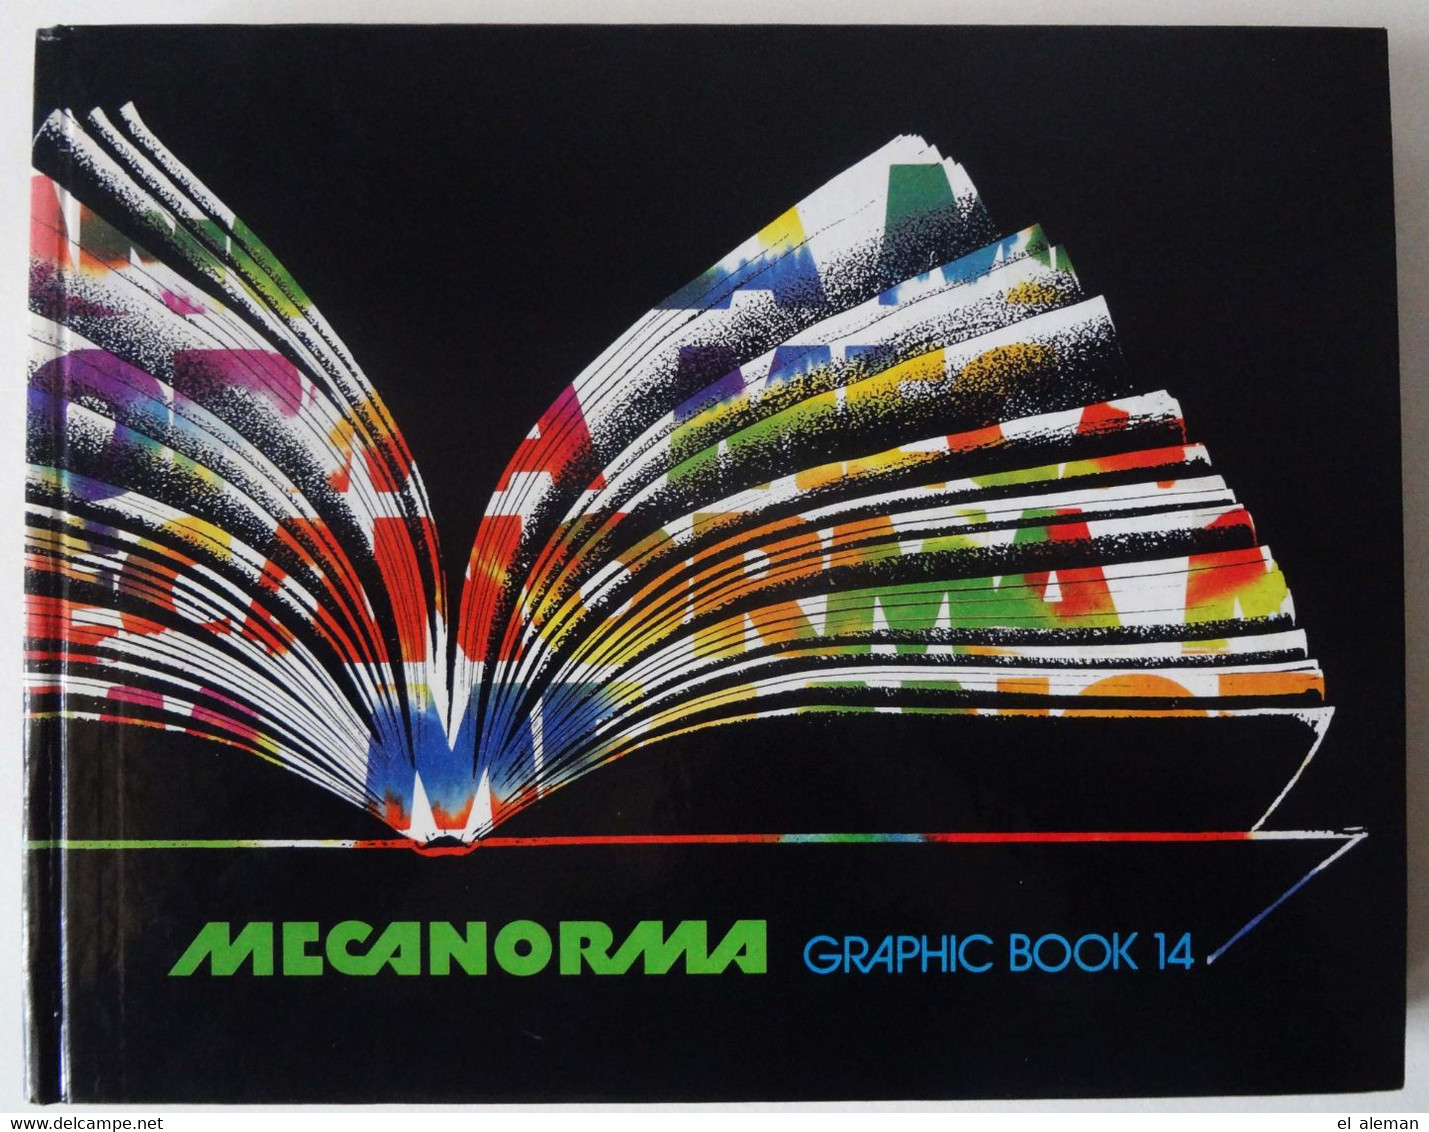 Schriftenmusterbuch Schriftenmusterkatalog Typografie, Graphic Design, Print, Mercanorma Graphic Book 14, 1984 - Grafik & Design